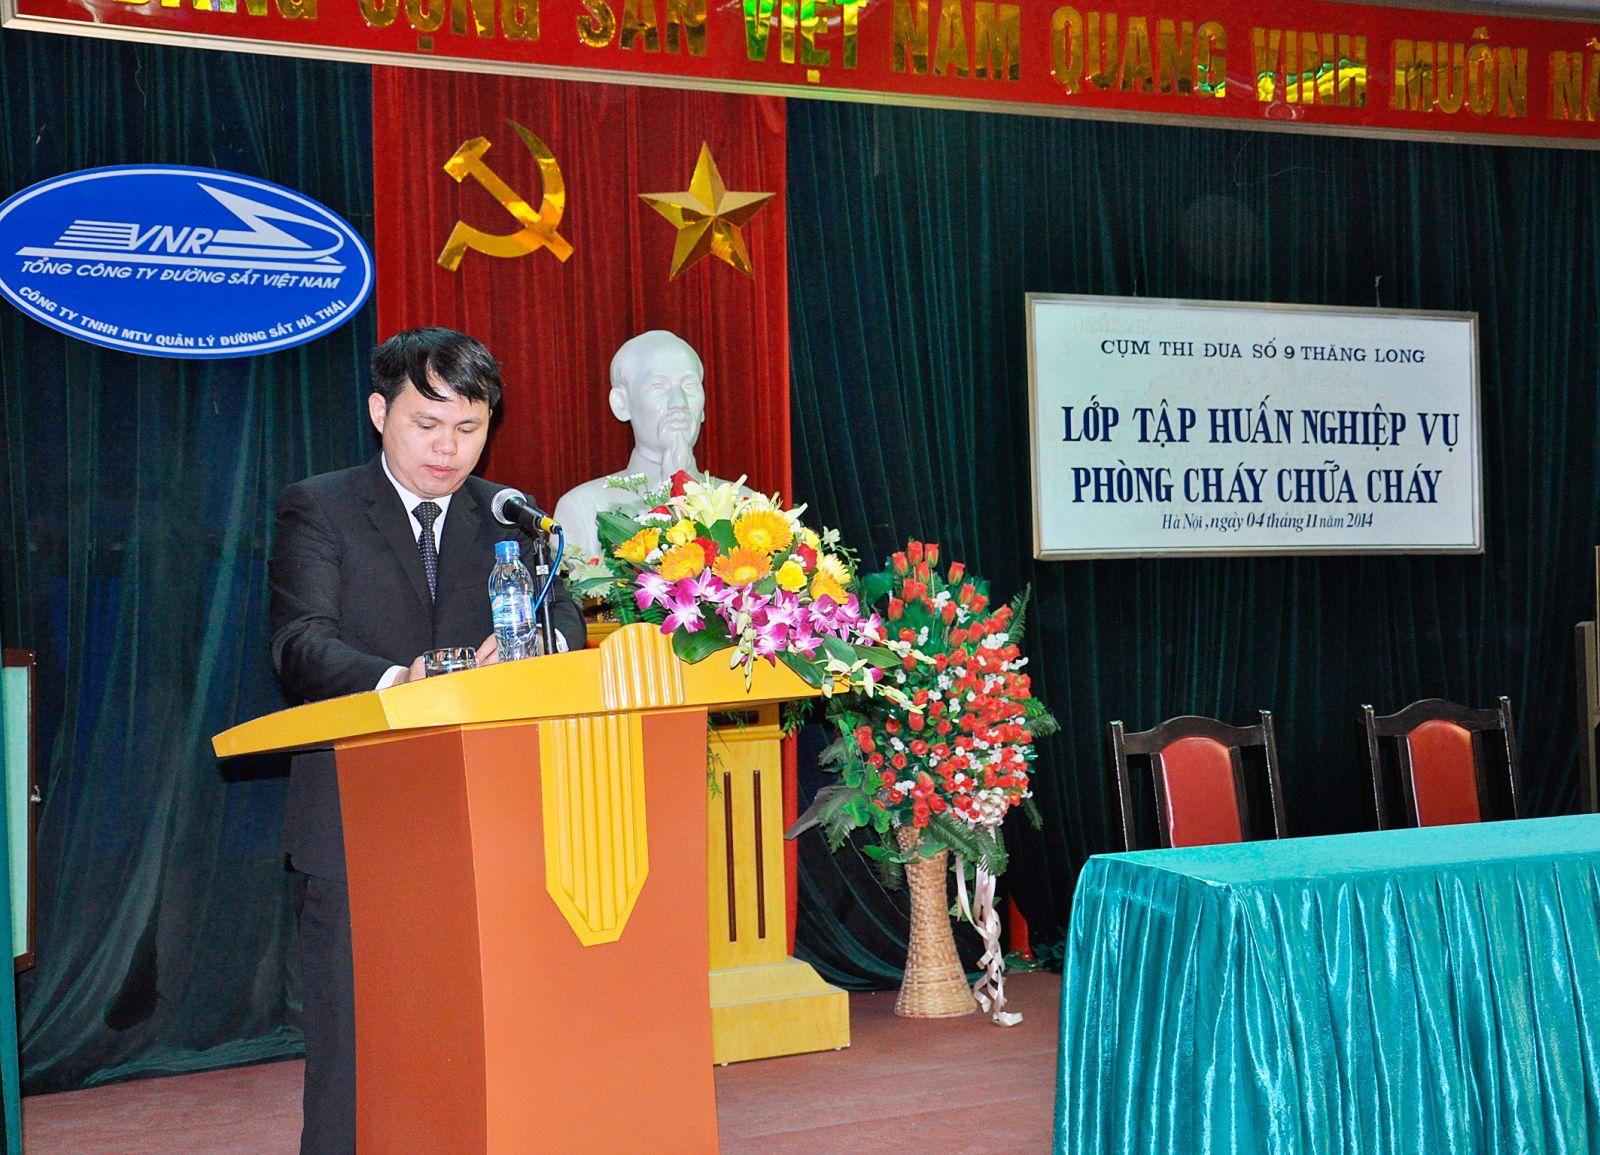 Đồng chí Phạm Văn Tú - Phó Giám đốc Công ty phát biểu tại lớp tập huấn.